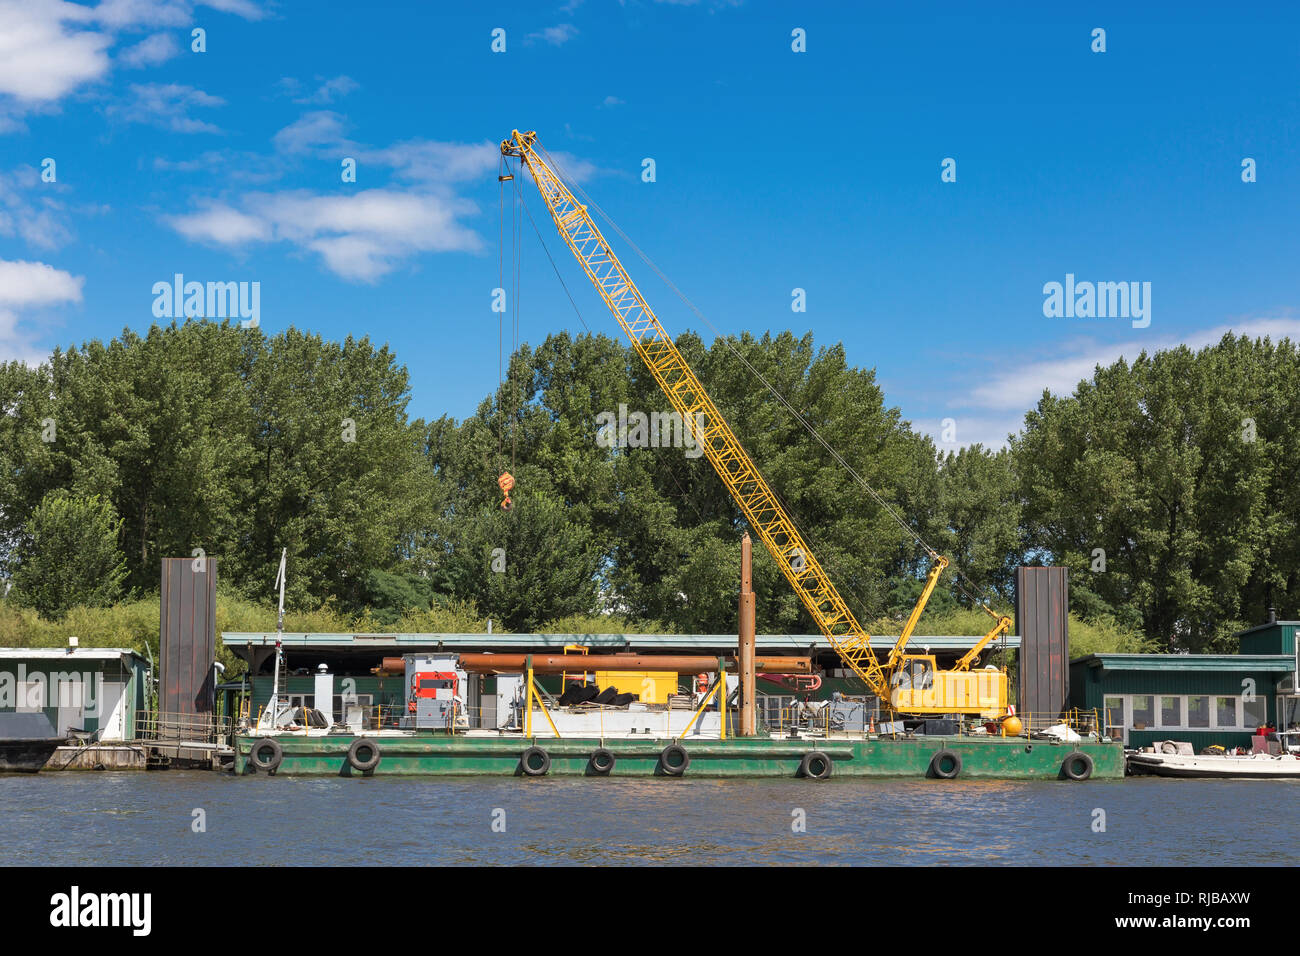 Yelloe crane at the pier in the port of Hamburg Stock Photo